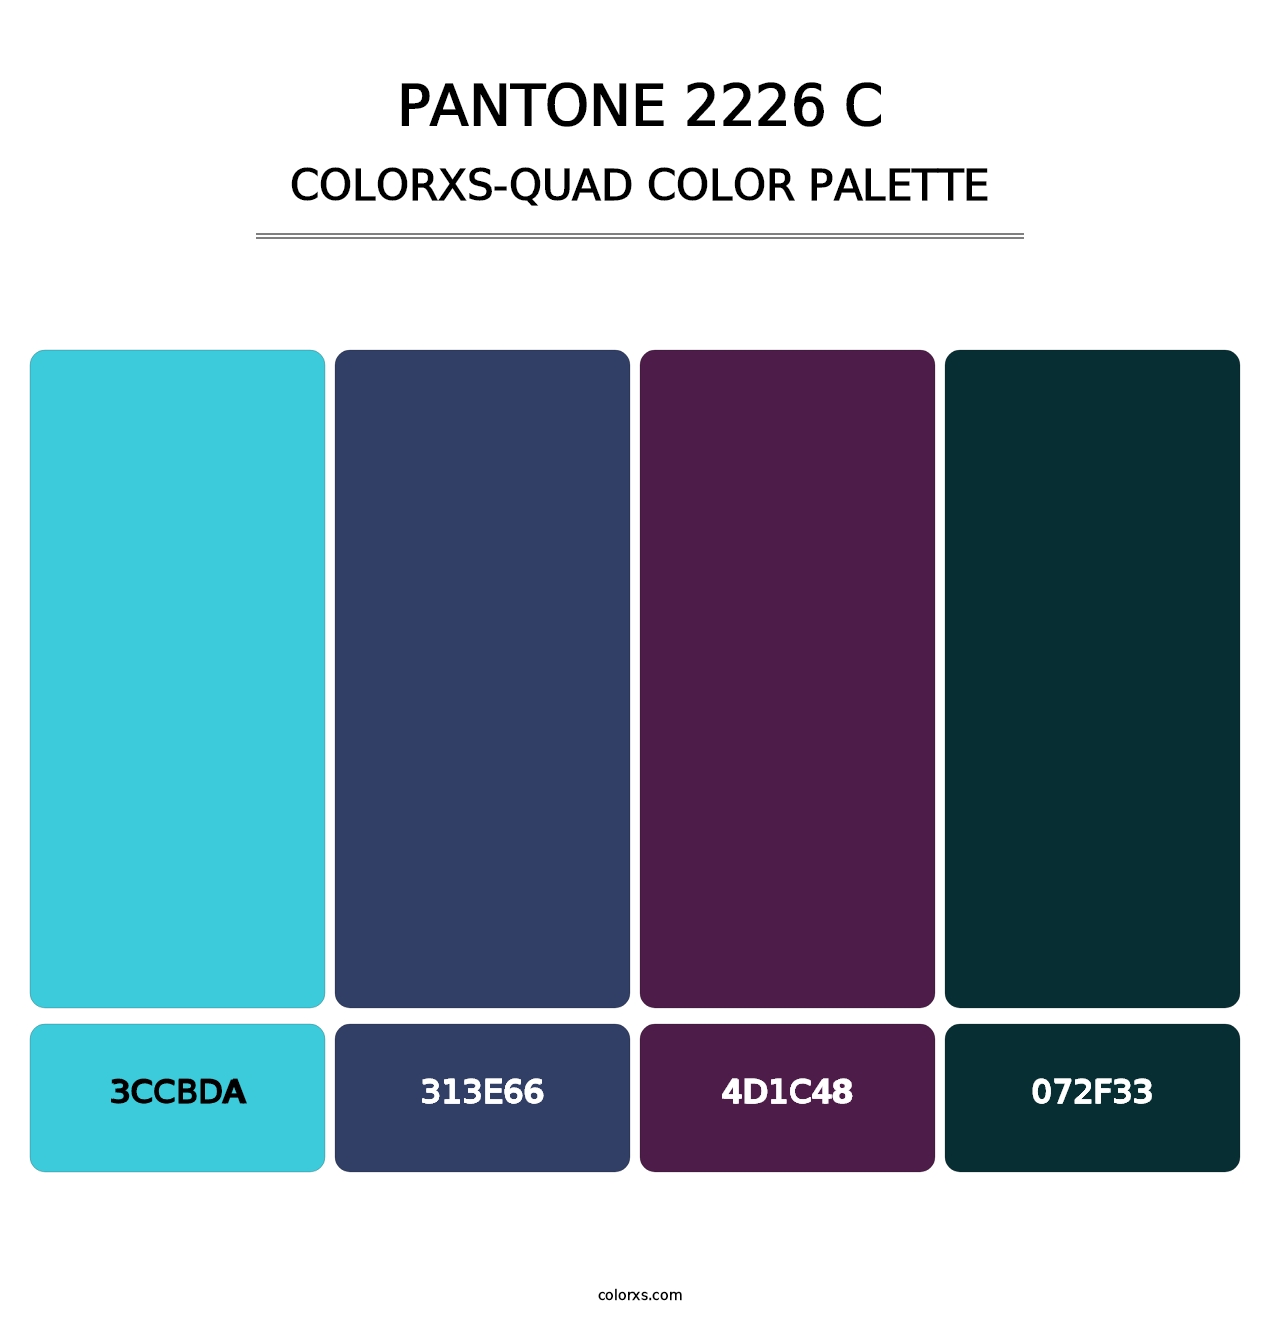 PANTONE 2226 C - Colorxs Quad Palette